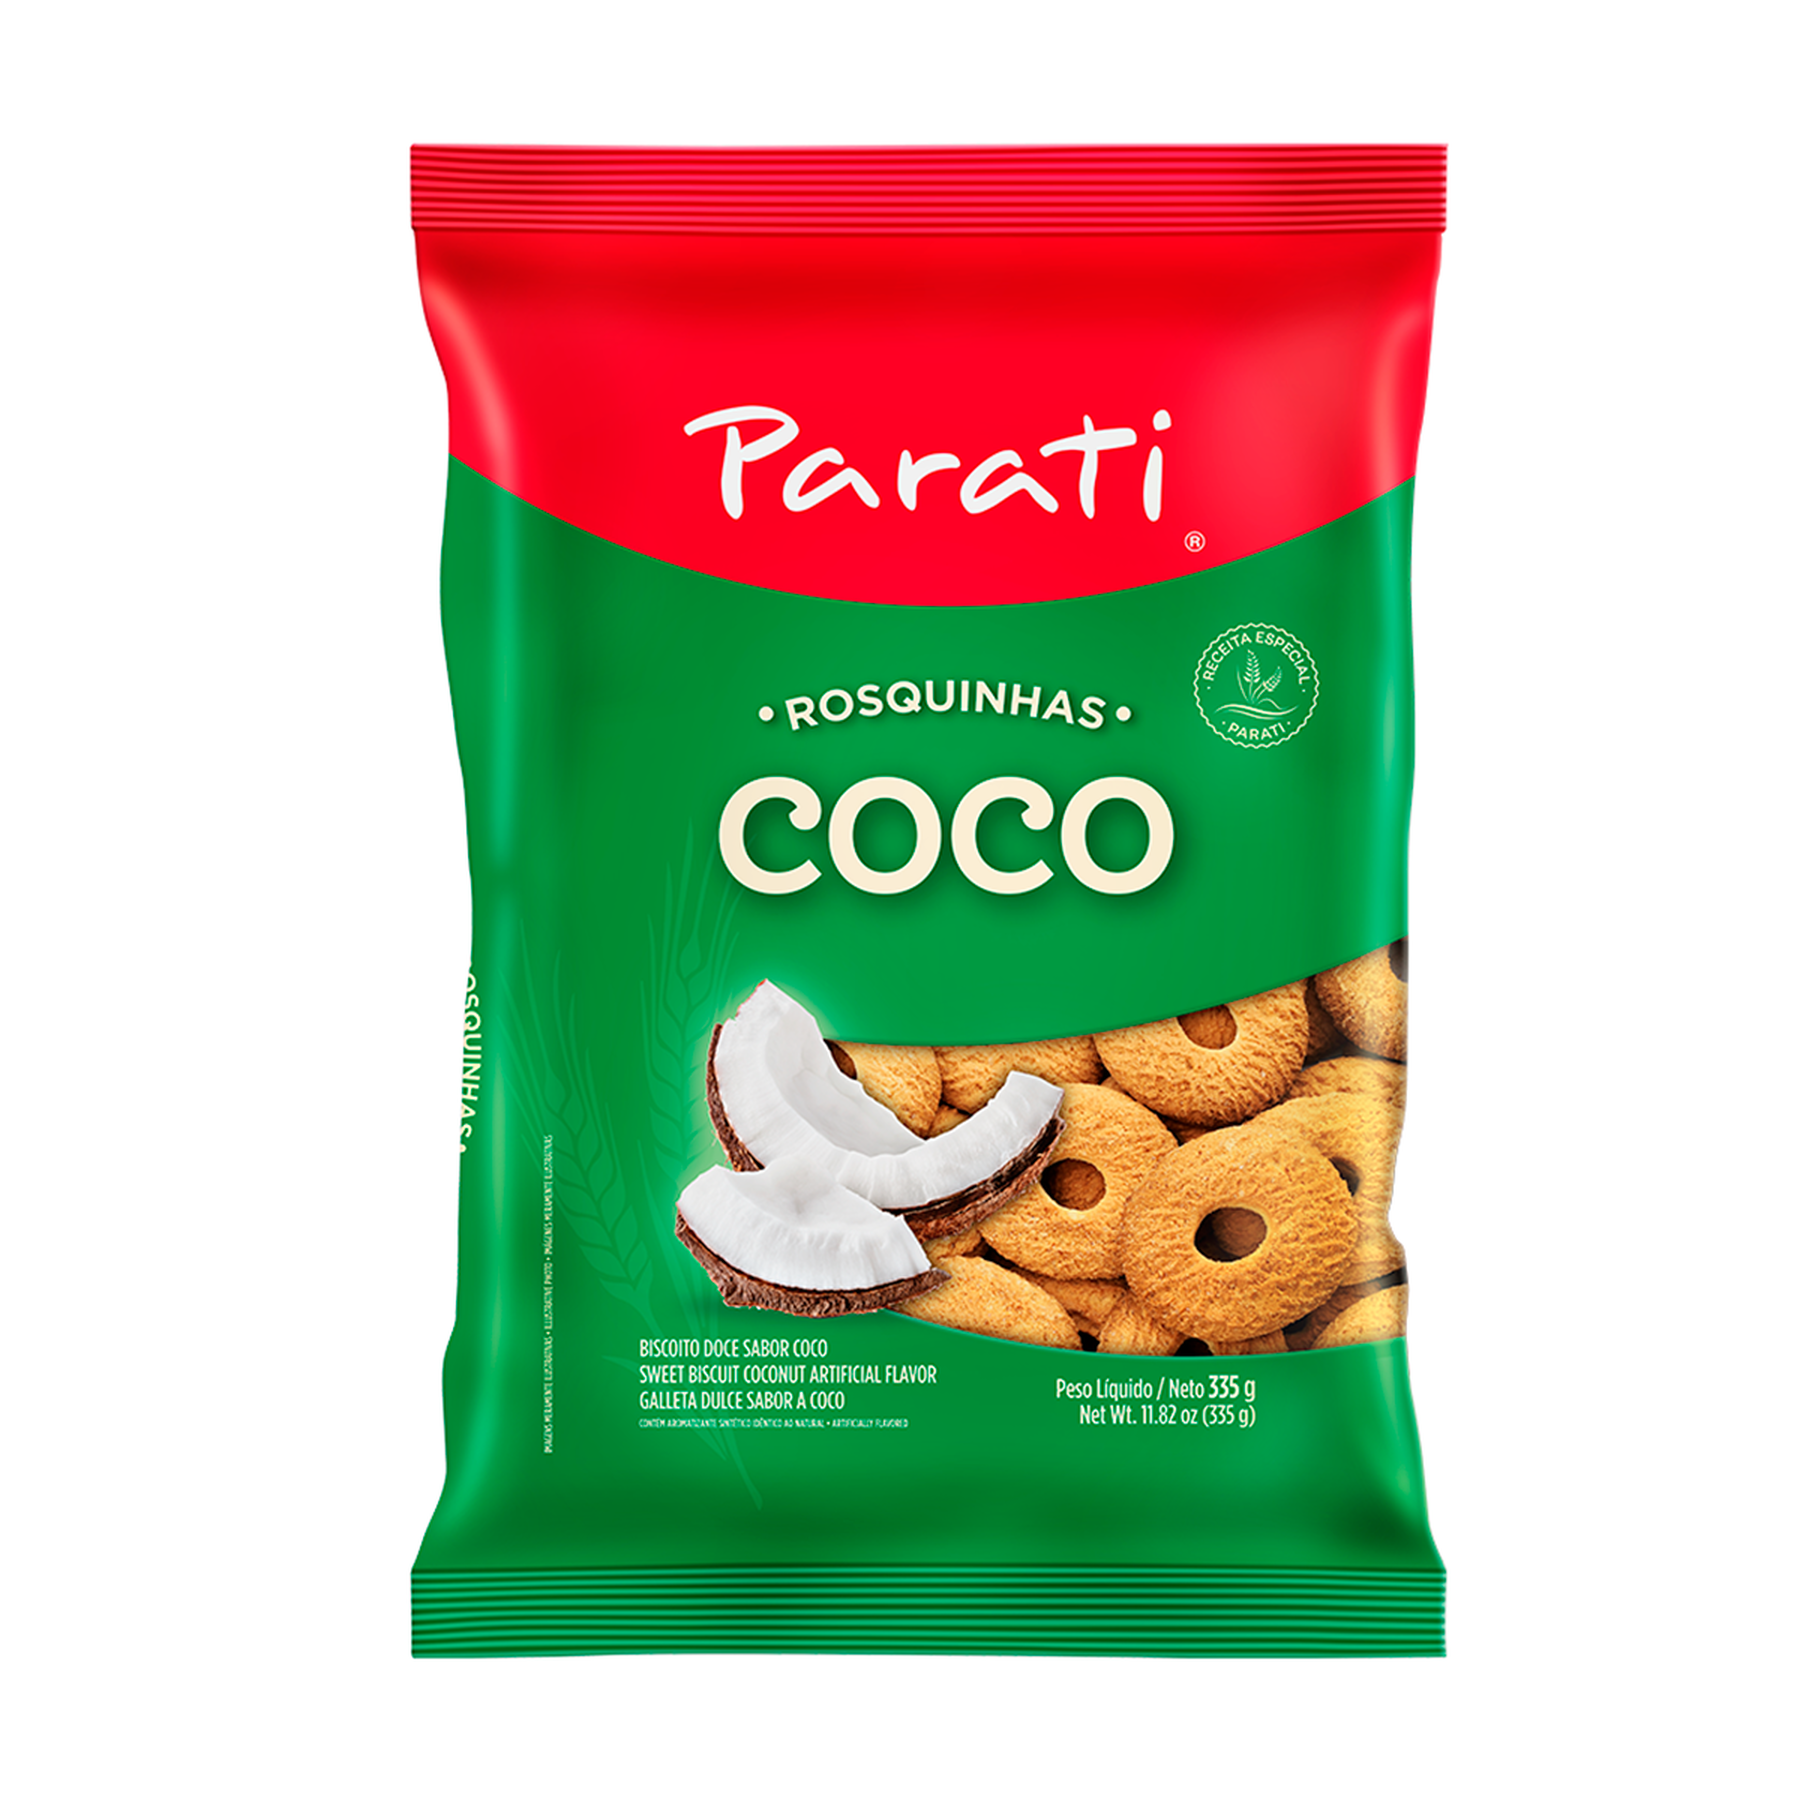 Biscoito Rosquinha Parati Coco 335g